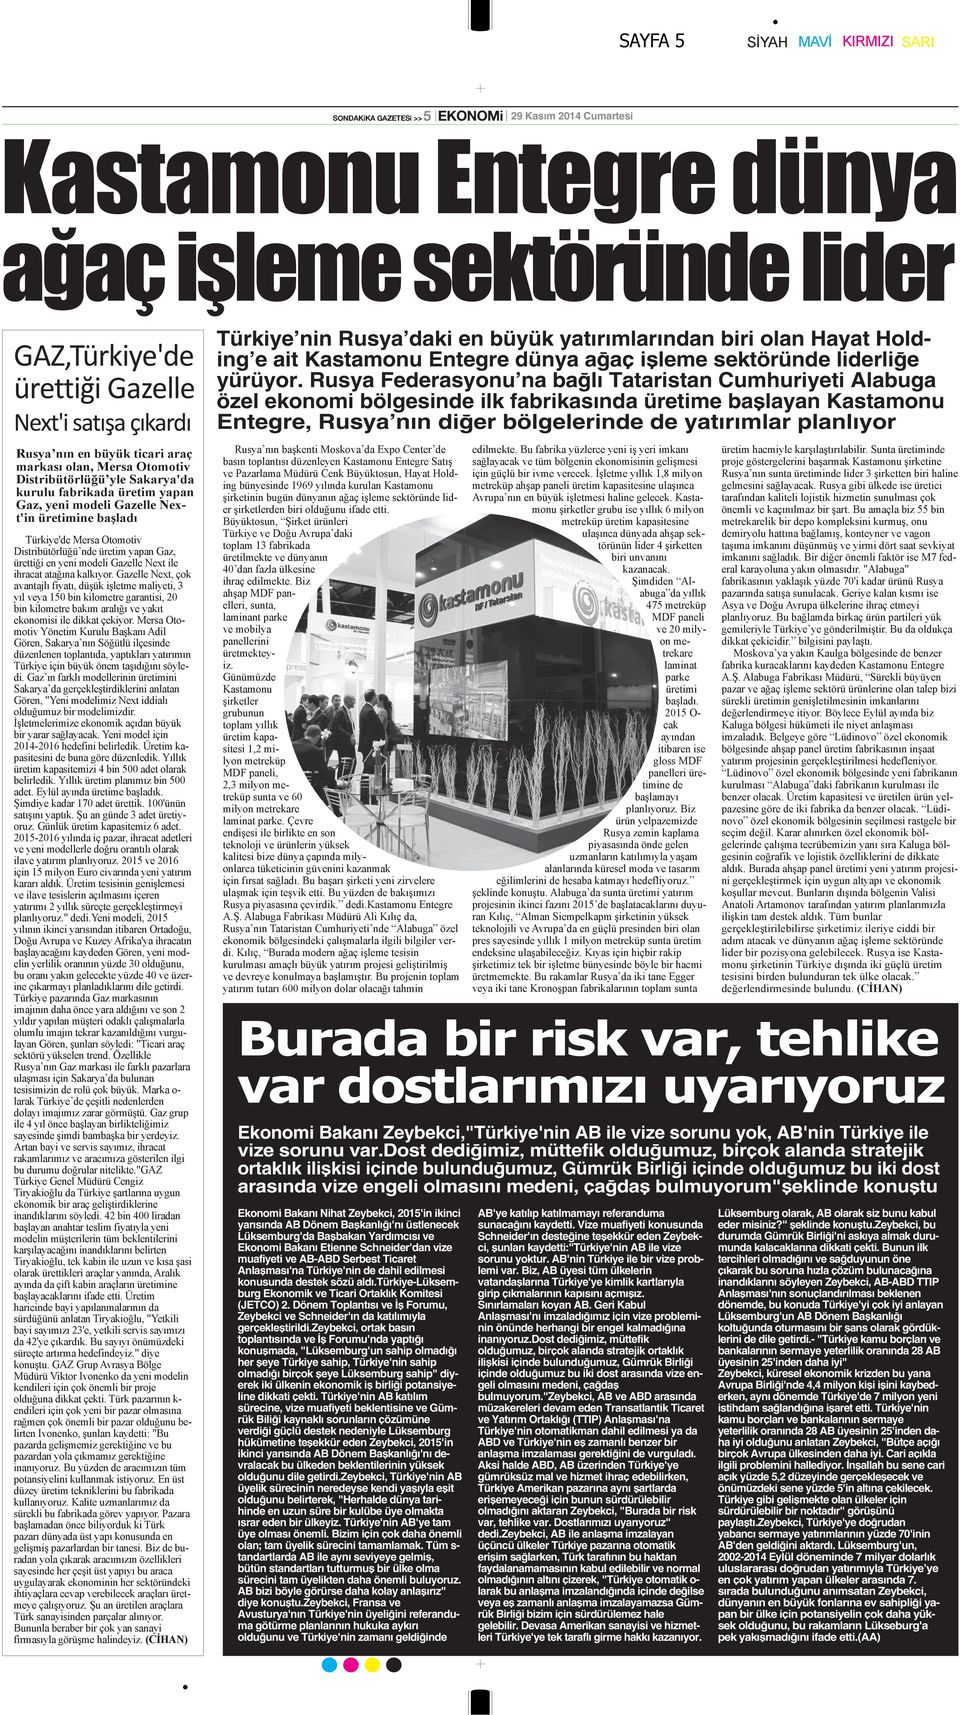 Bakanı Zeybekci,"Türkiye'nin AB ile vize sorunu yok, AB'nin Türkiye ile vize sorunu var.